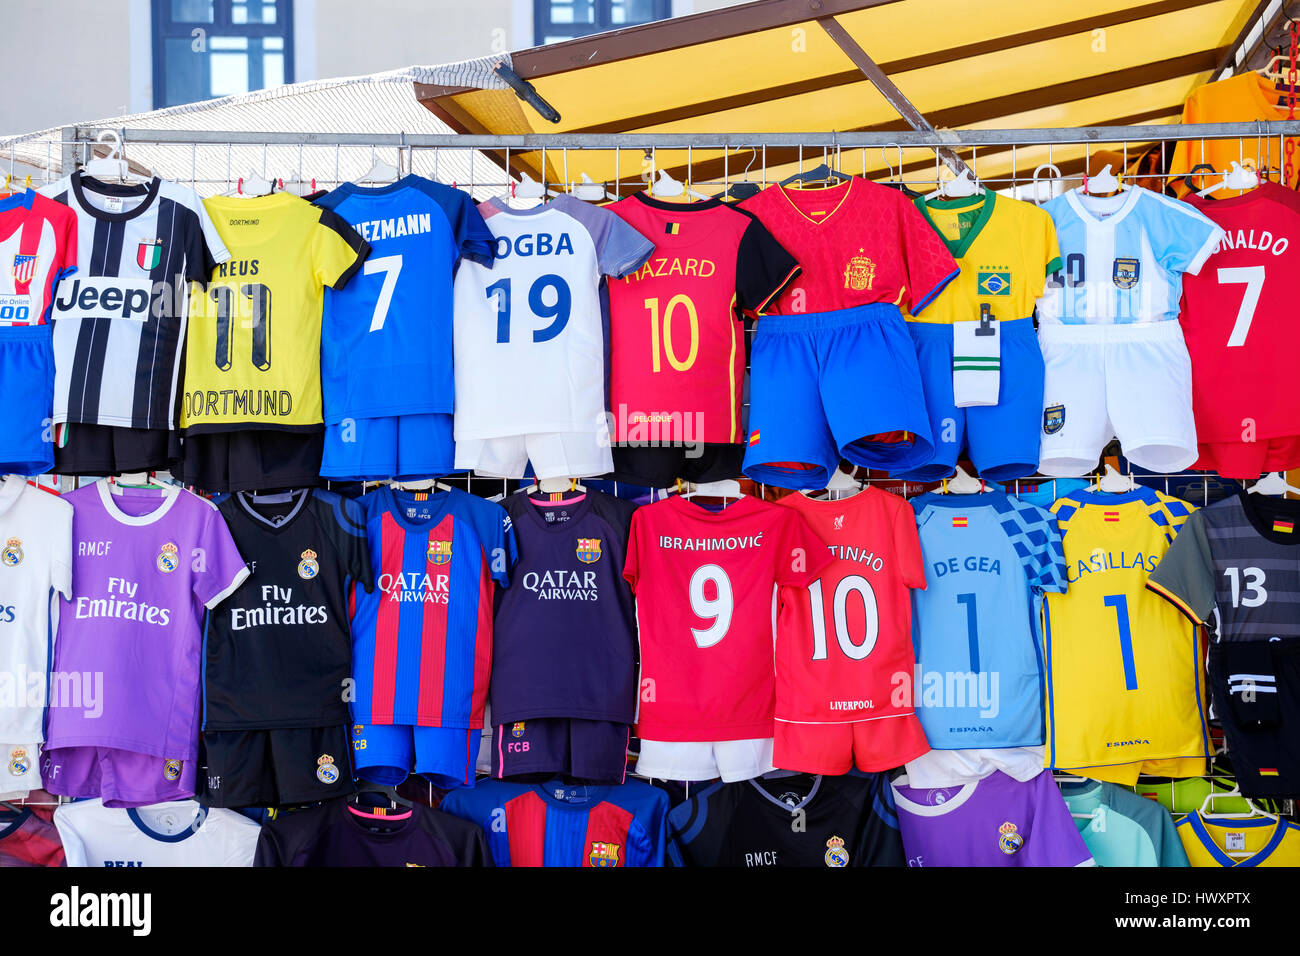 Ein Marktstand im Freien mit einer Auswahl an nachgebildeten Fußballtrikots für Kinder, die auf der Rückseite des Trikots mit verschiedenen Top-Spielernamen versehen sind Stockfoto